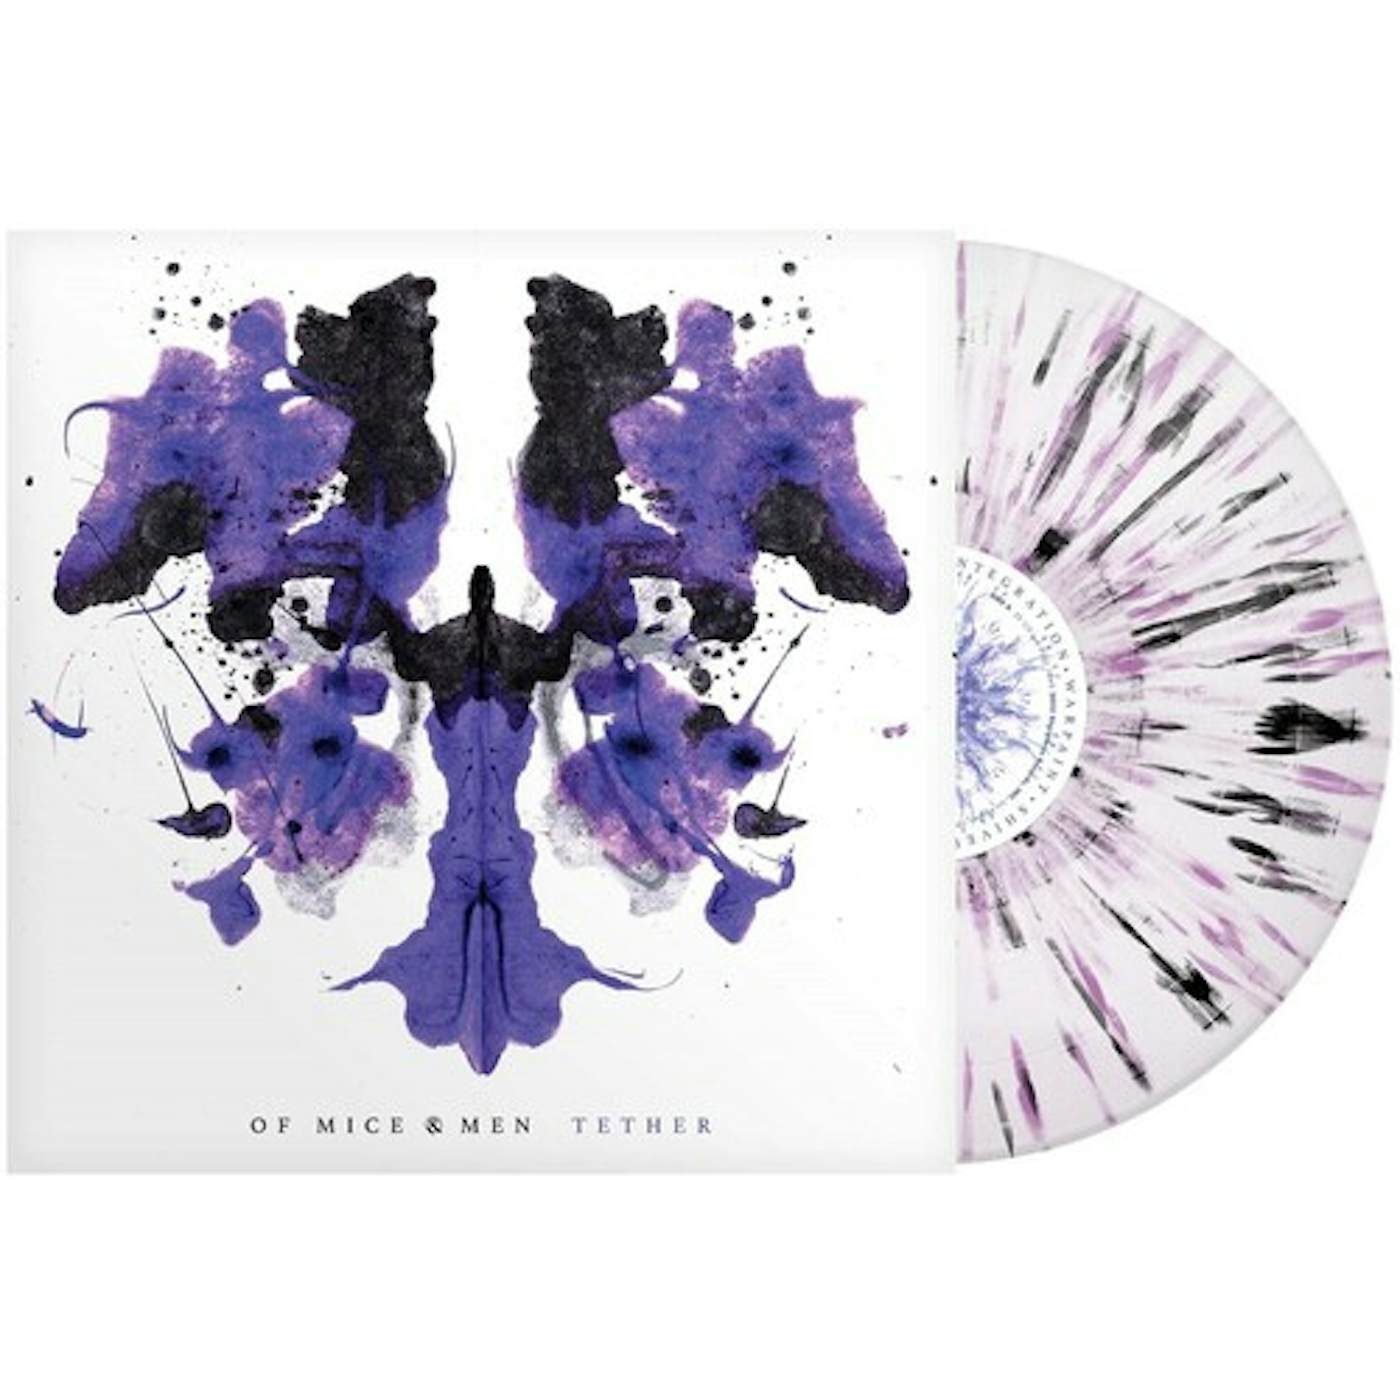 Of Mice & Men Tether (White Purple Black Splatter) Vinyl Record